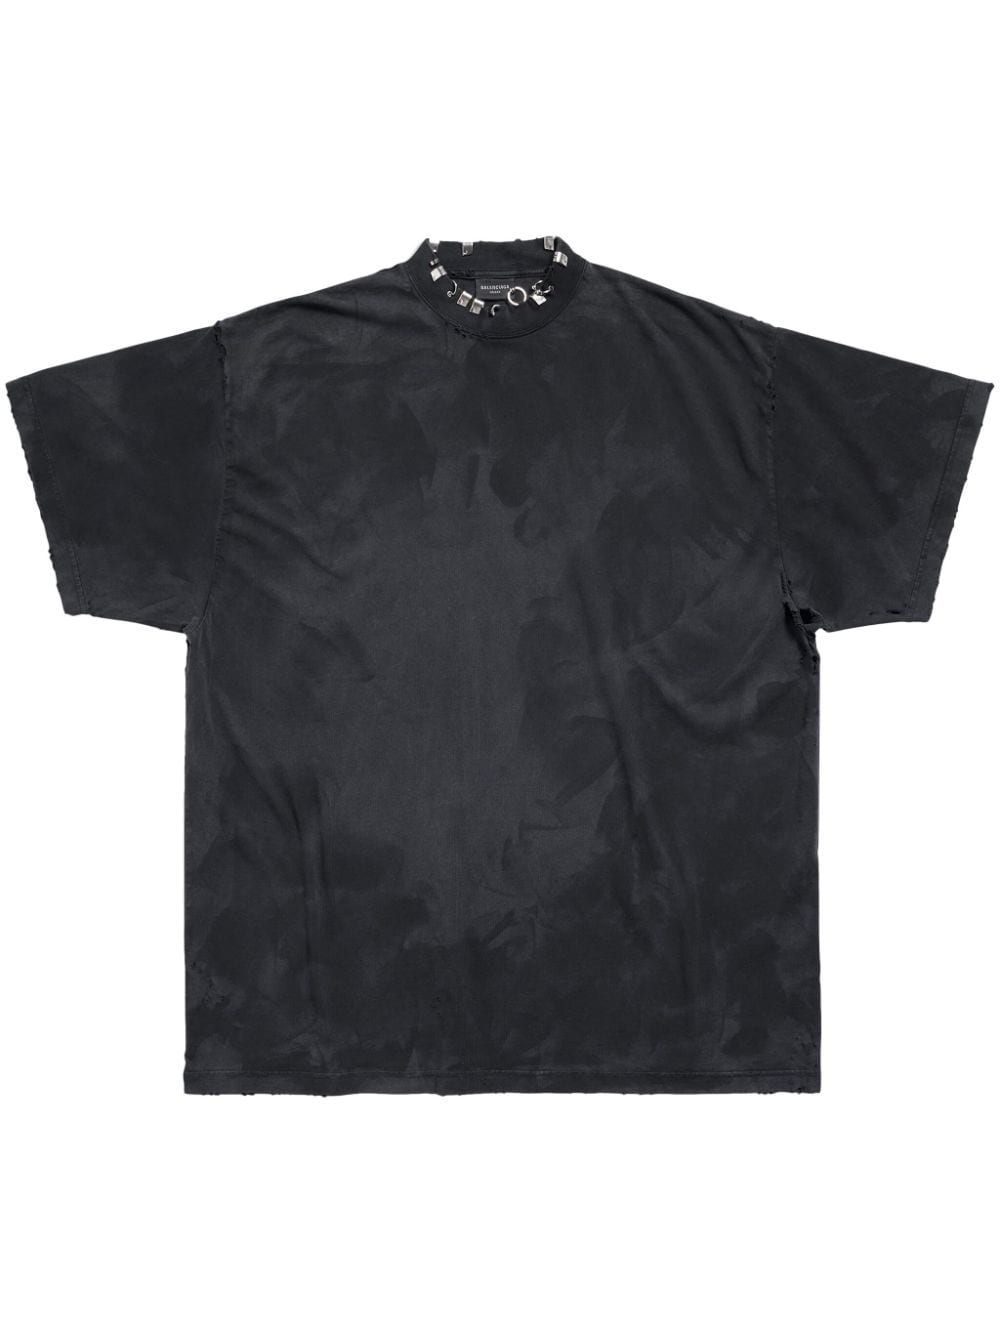 Balenciaga T-shirt met gerafeld effect - Zwart